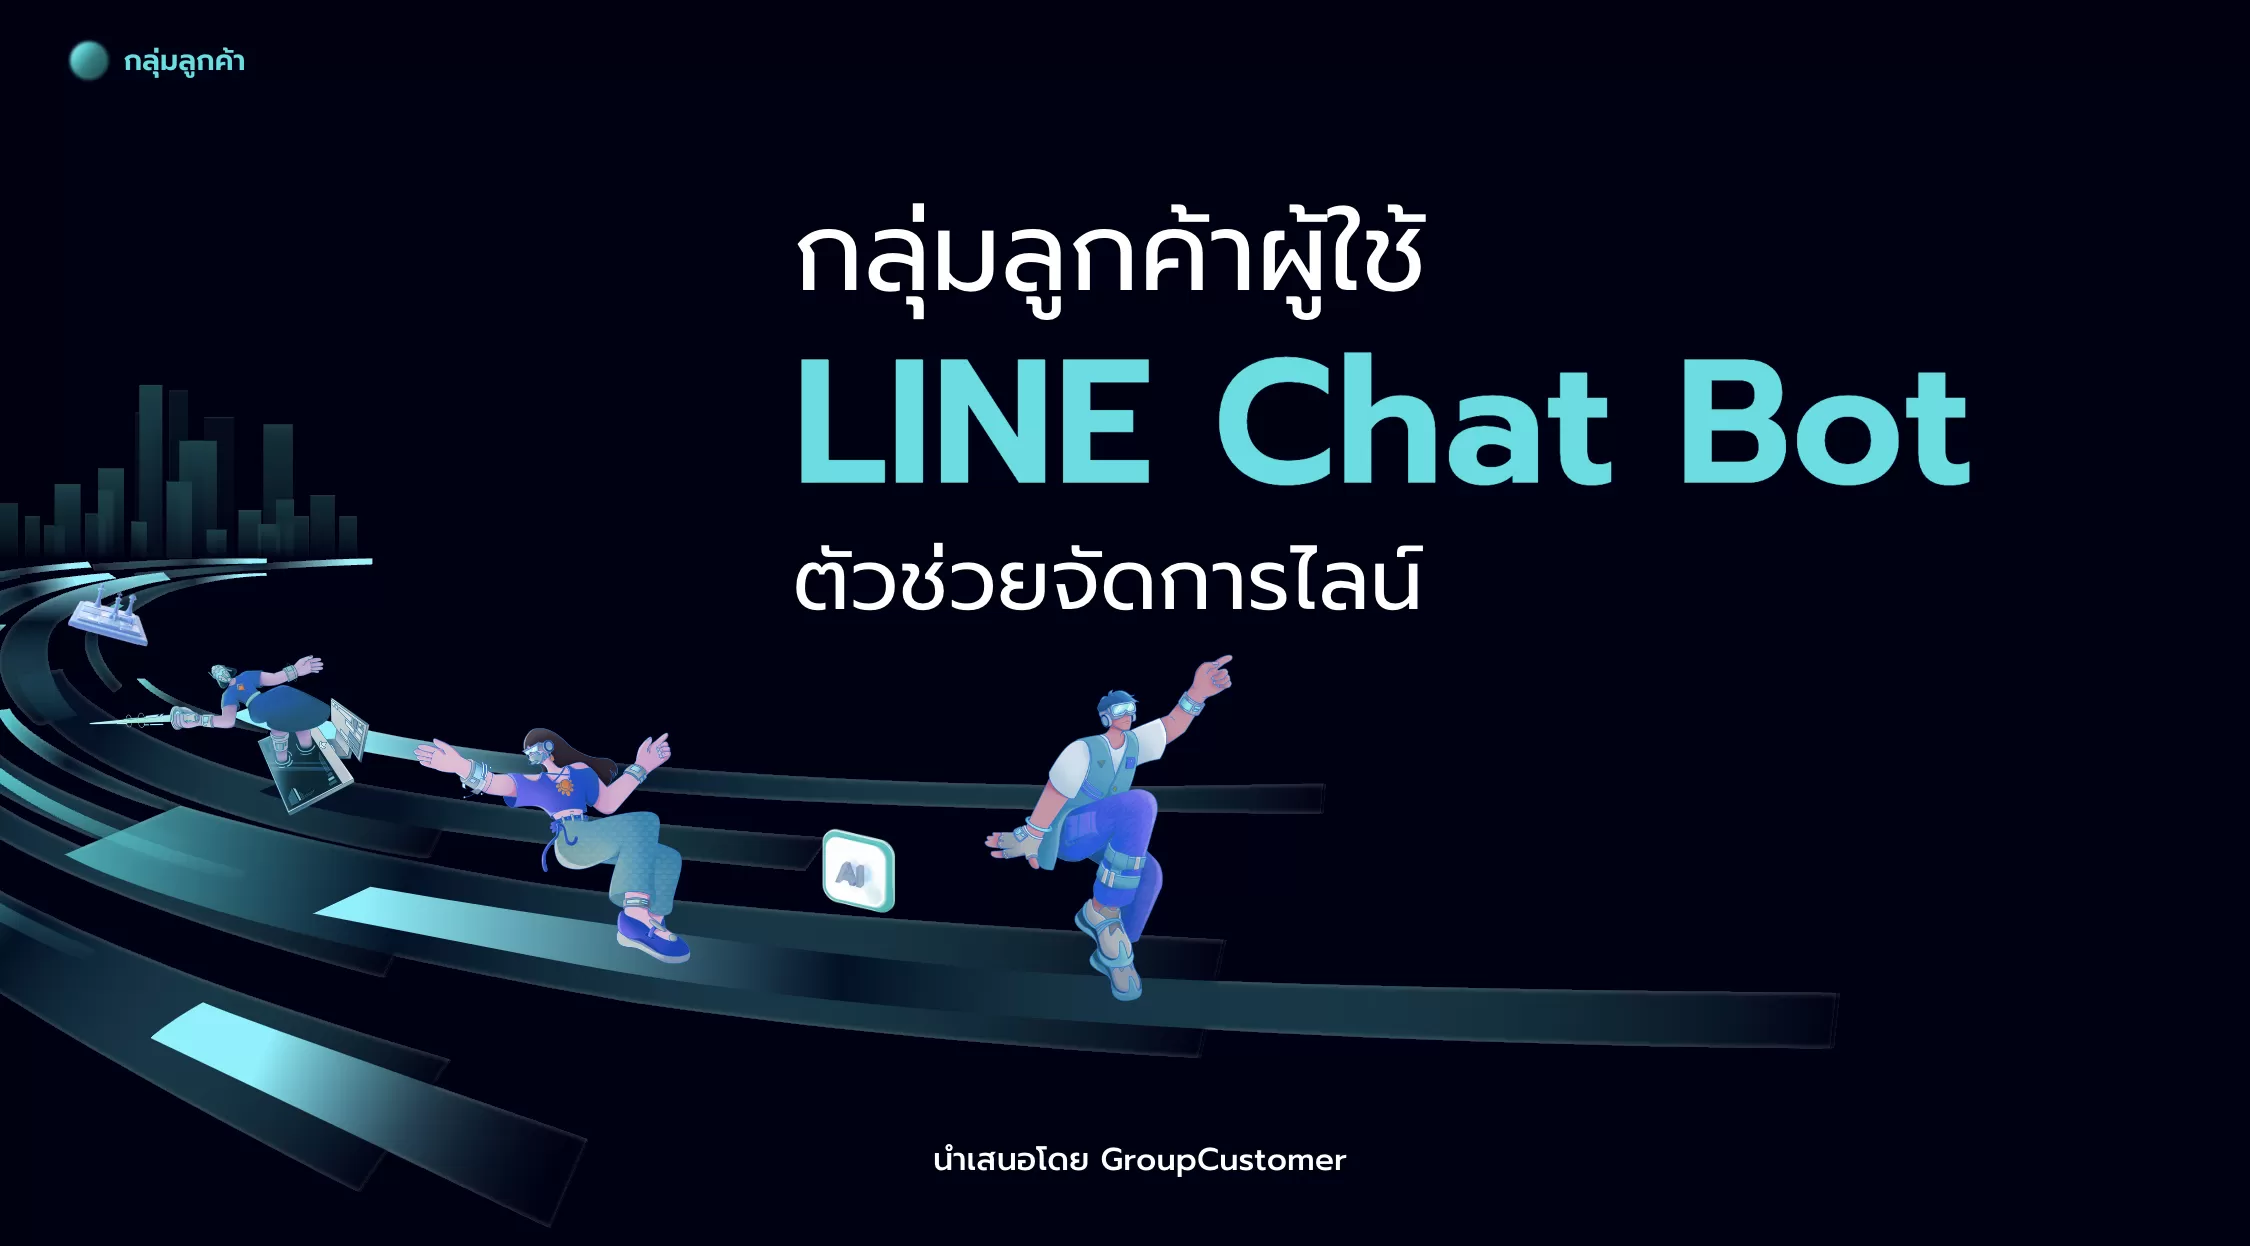 กลุ่มลูกค้าผู้ใช้ LINE Chat Bot ตัวช่วยจัดการไลน์